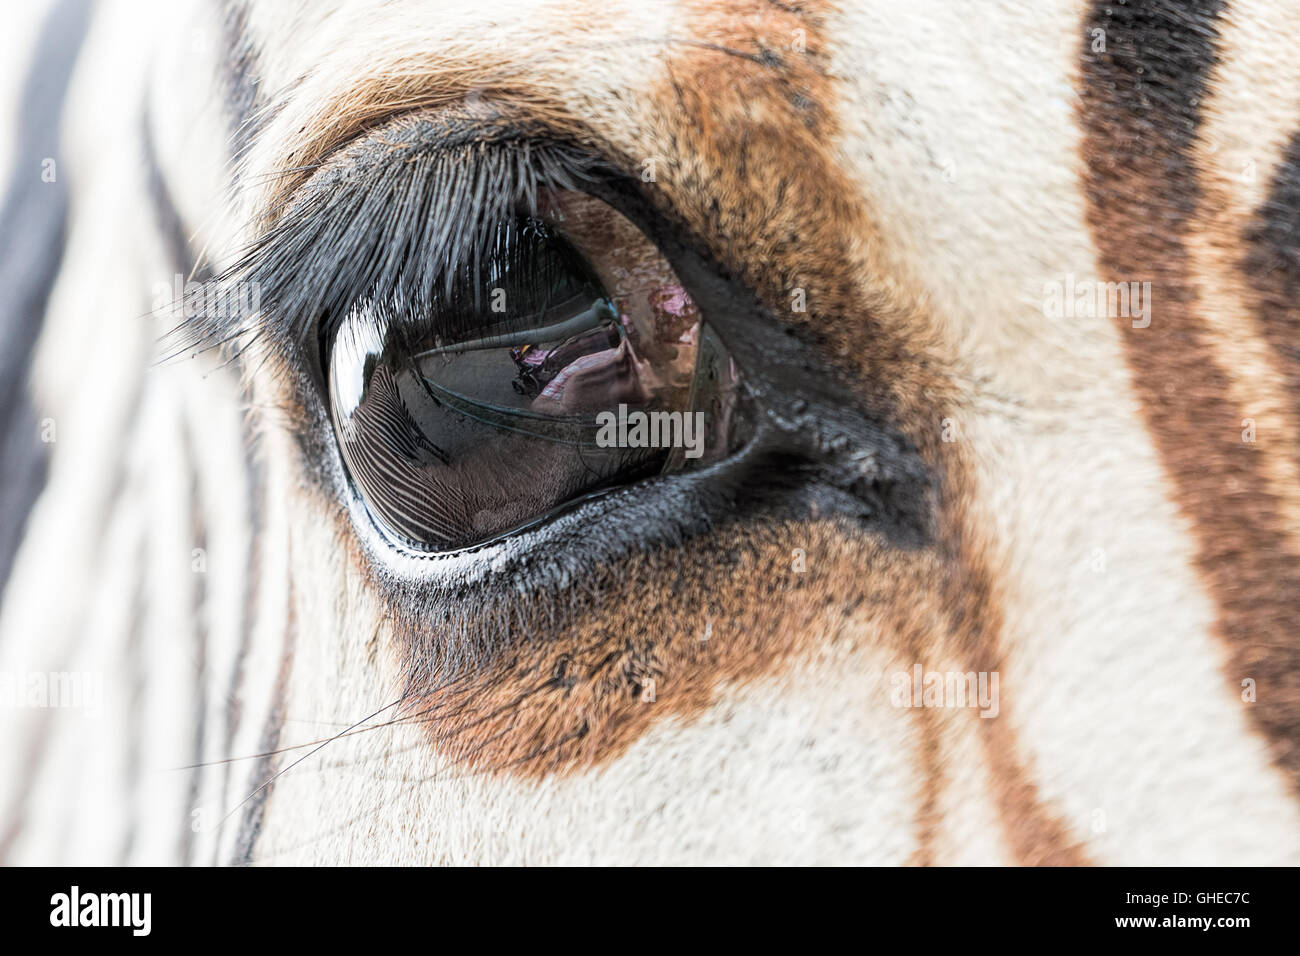 Nahaufnahme der Zebra-Auge mit ein Spiegelbild der anderen Zebra und Besucher des Zoos. Stockfoto